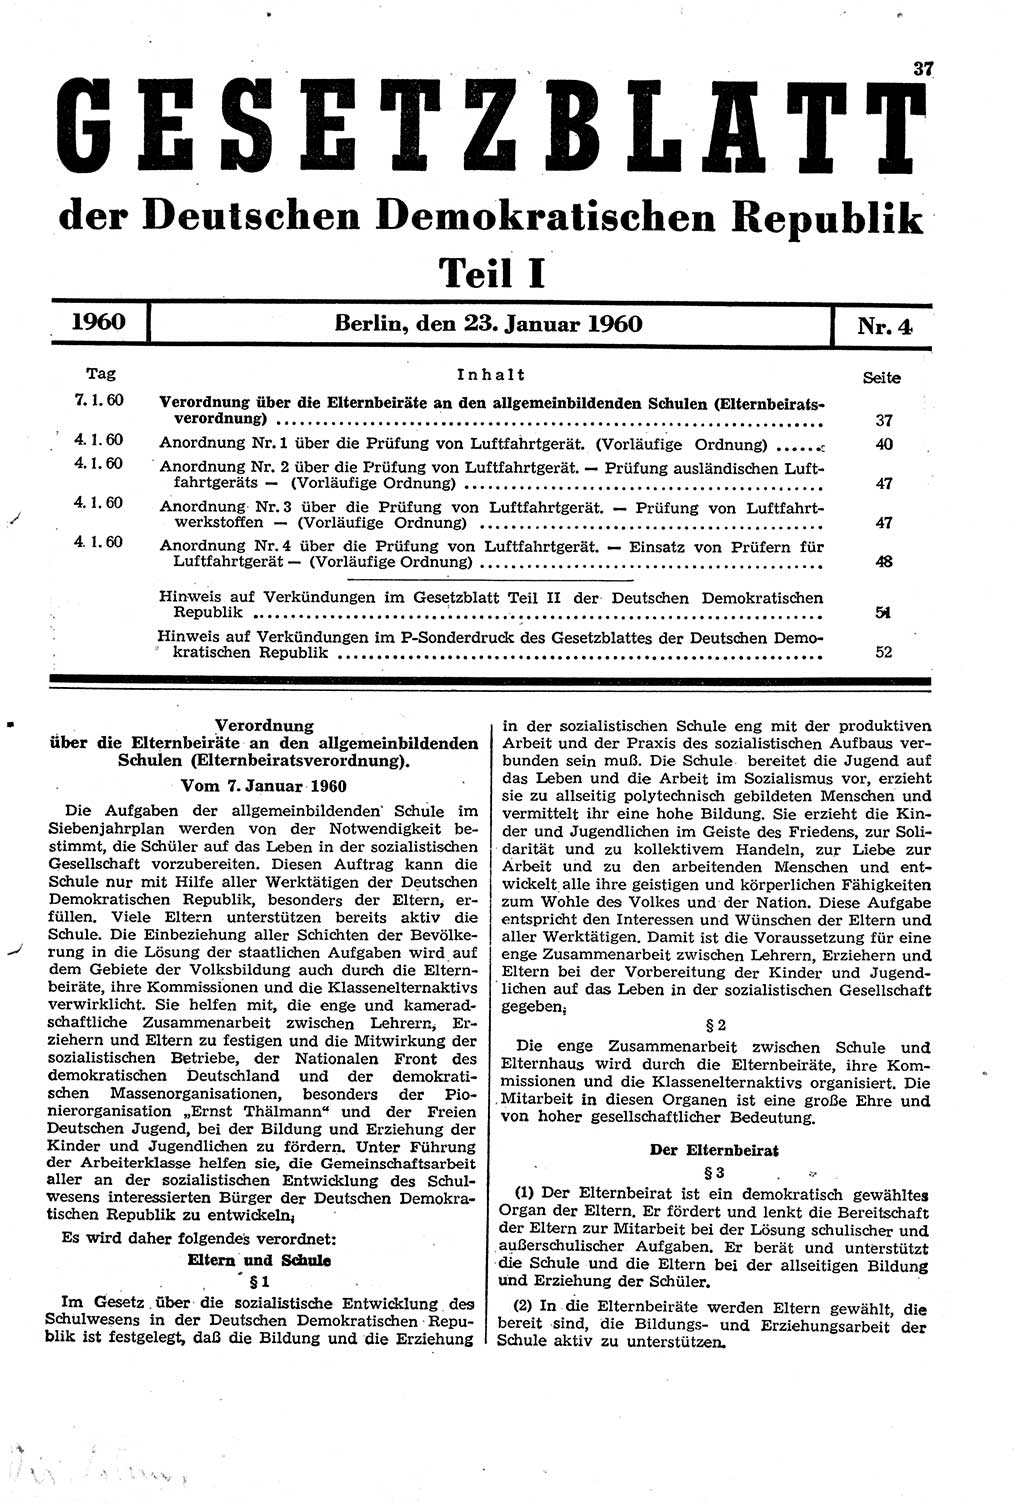 Gesetzblatt (GBl.) der Deutschen Demokratischen Republik (DDR) Teil Ⅰ 1960, Seite 37 (GBl. DDR Ⅰ 1960, S. 37)